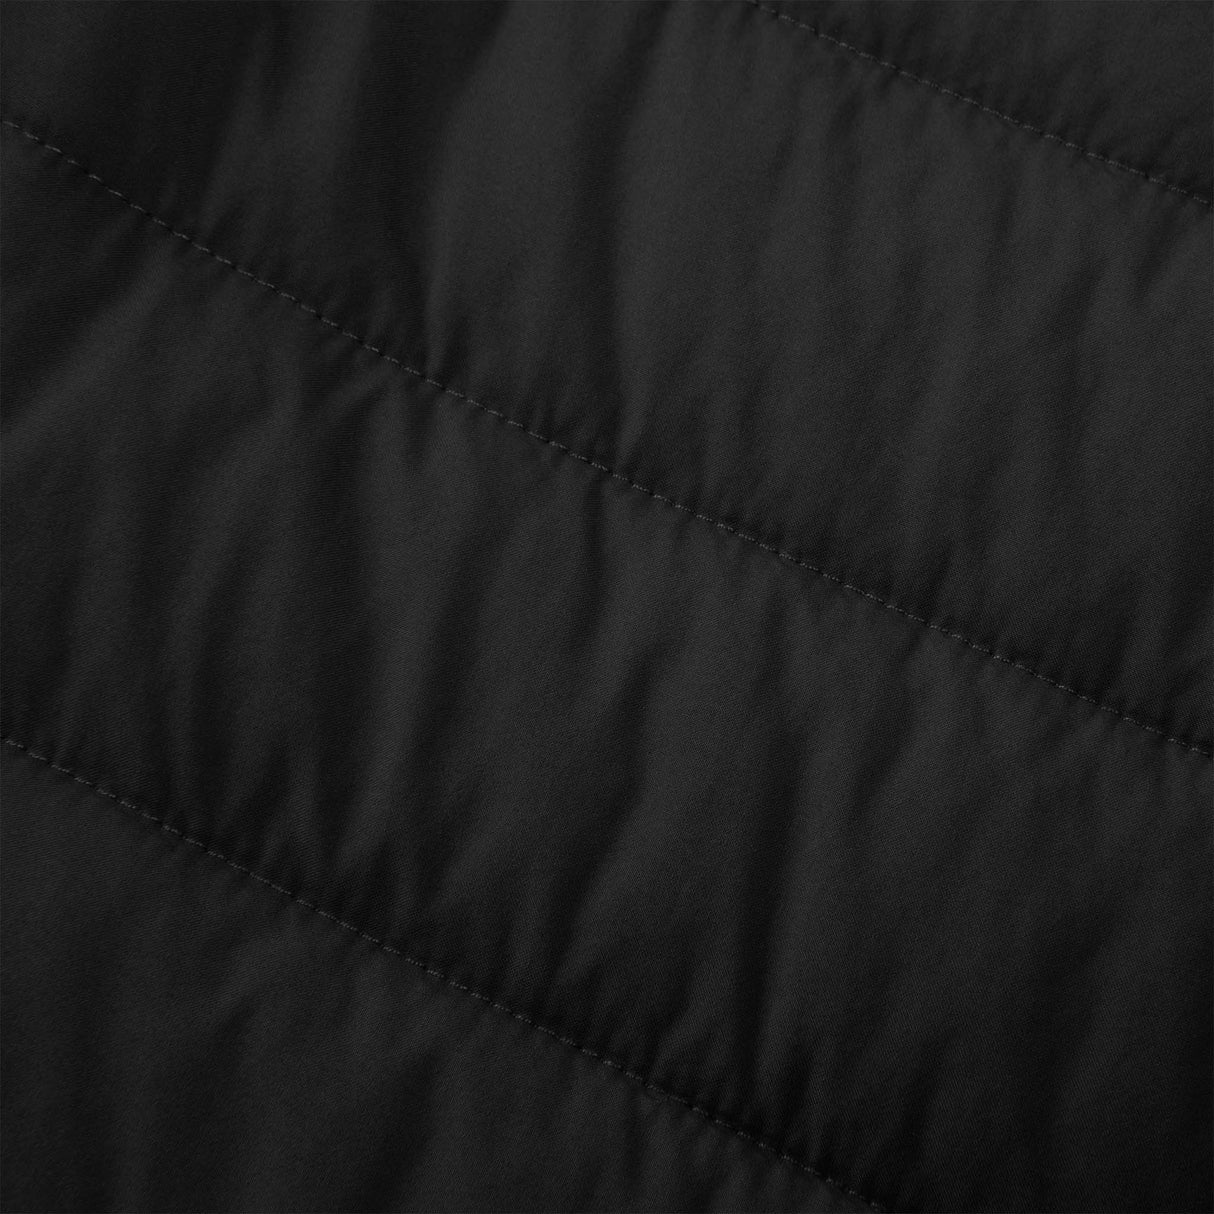 Brooks Shield Hybrid Jacket 2.0 manteau de course à pied noir femme detail textile